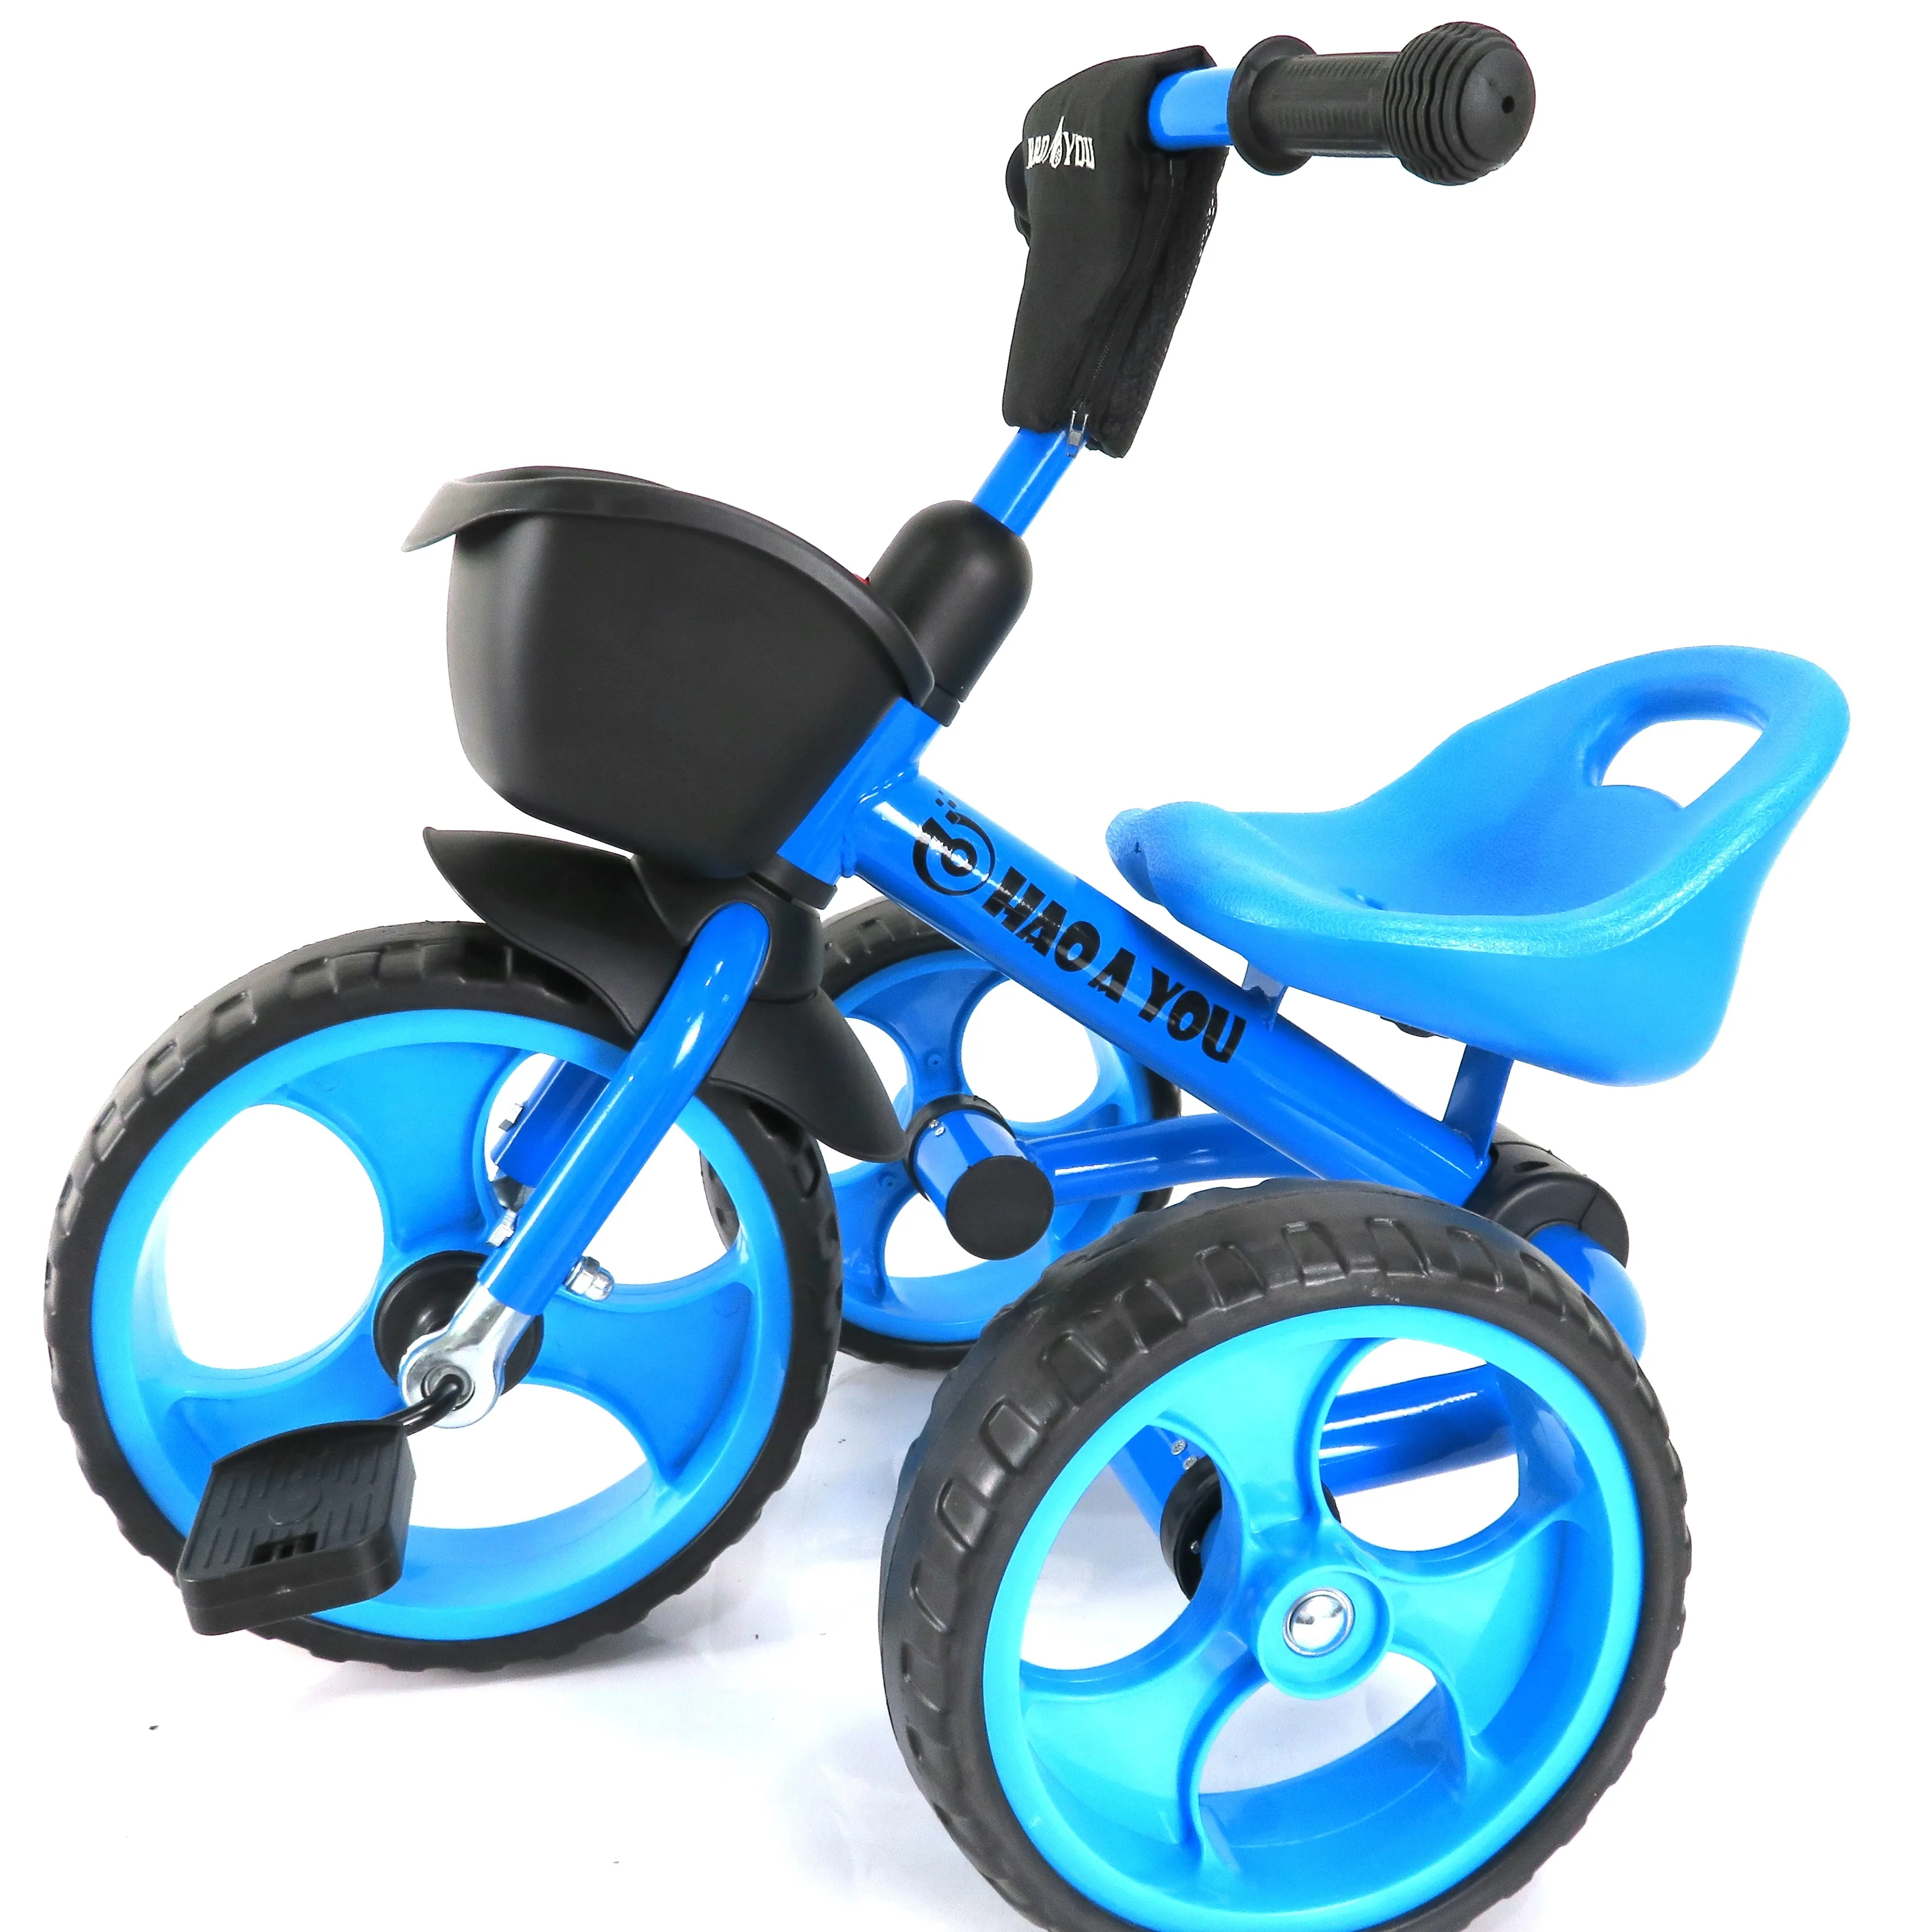 Sepeda roda tiga anak-anak, barang baru oem sepeda roda tiga murah/pabrik grosir